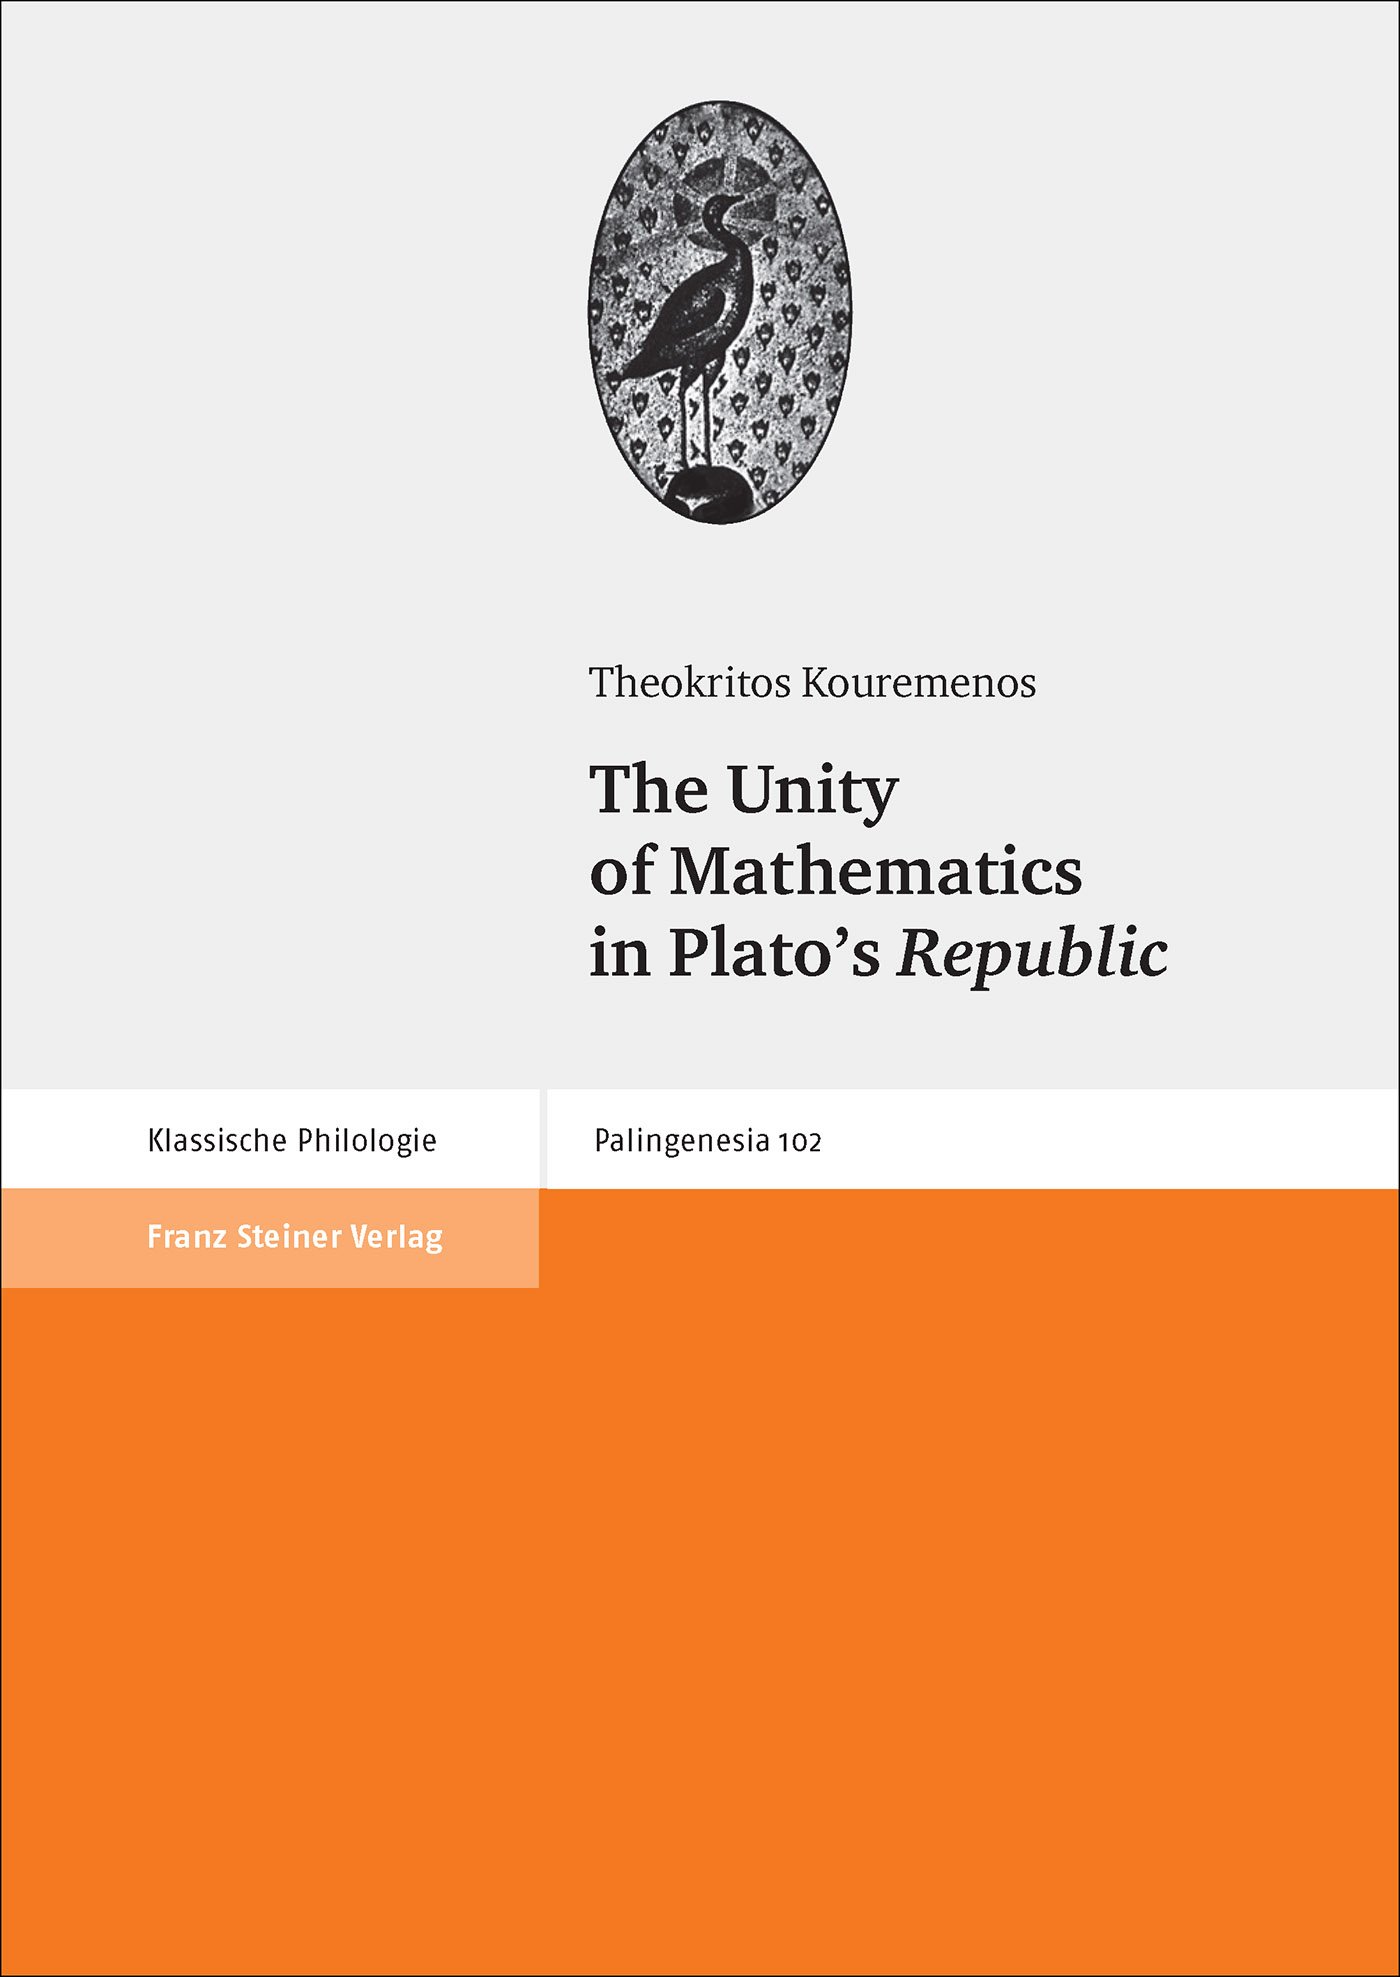 The Unity of Mathematics in Plato's Republic